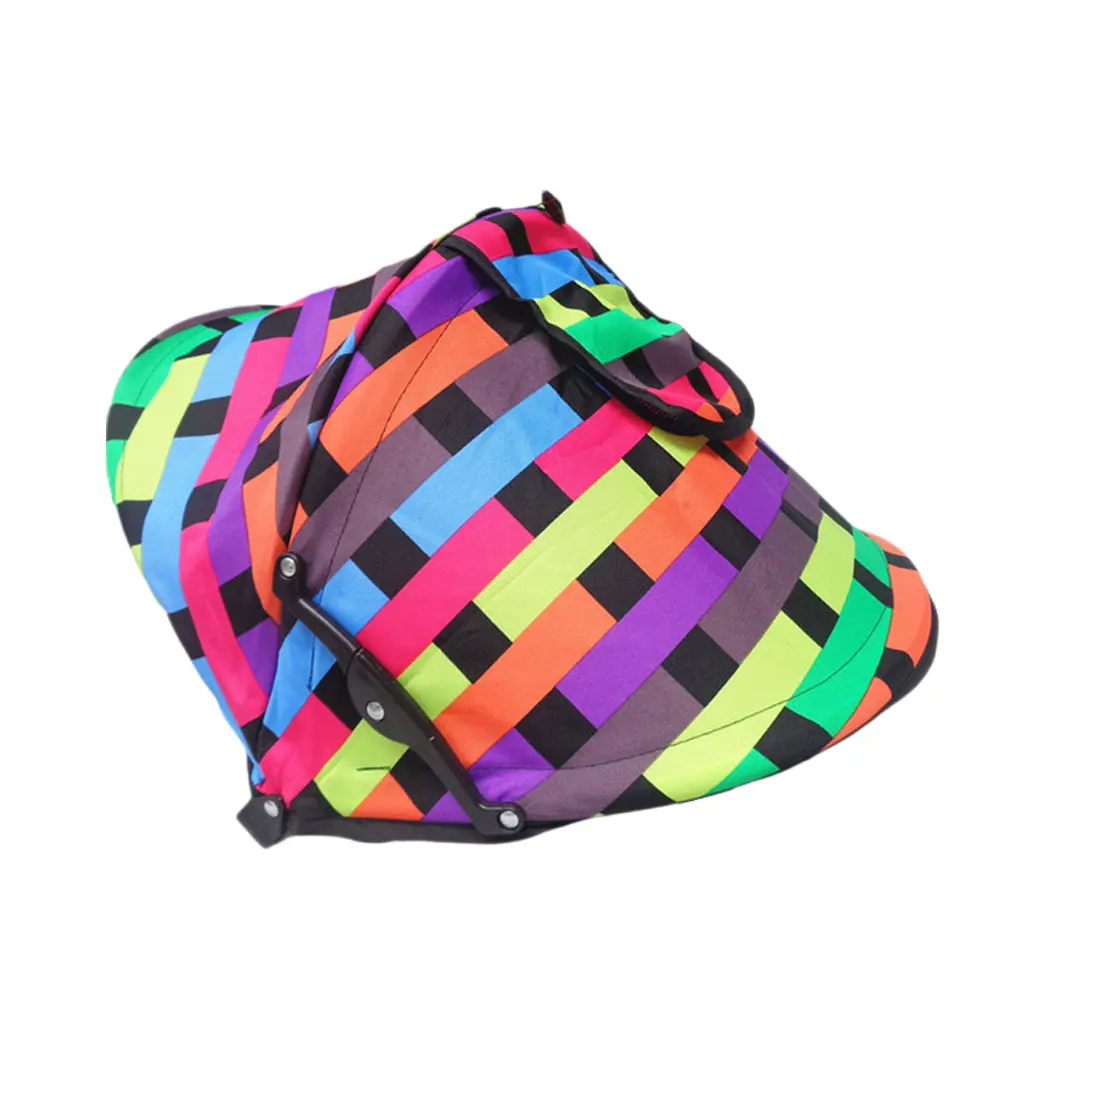 Открытый многоцелевой теплый не боится ветра и защищает от солнца крышка детская коляска ветрозащитные части коляска красочные солнцезащитный капюшон - Цвет: style 1 multicolor